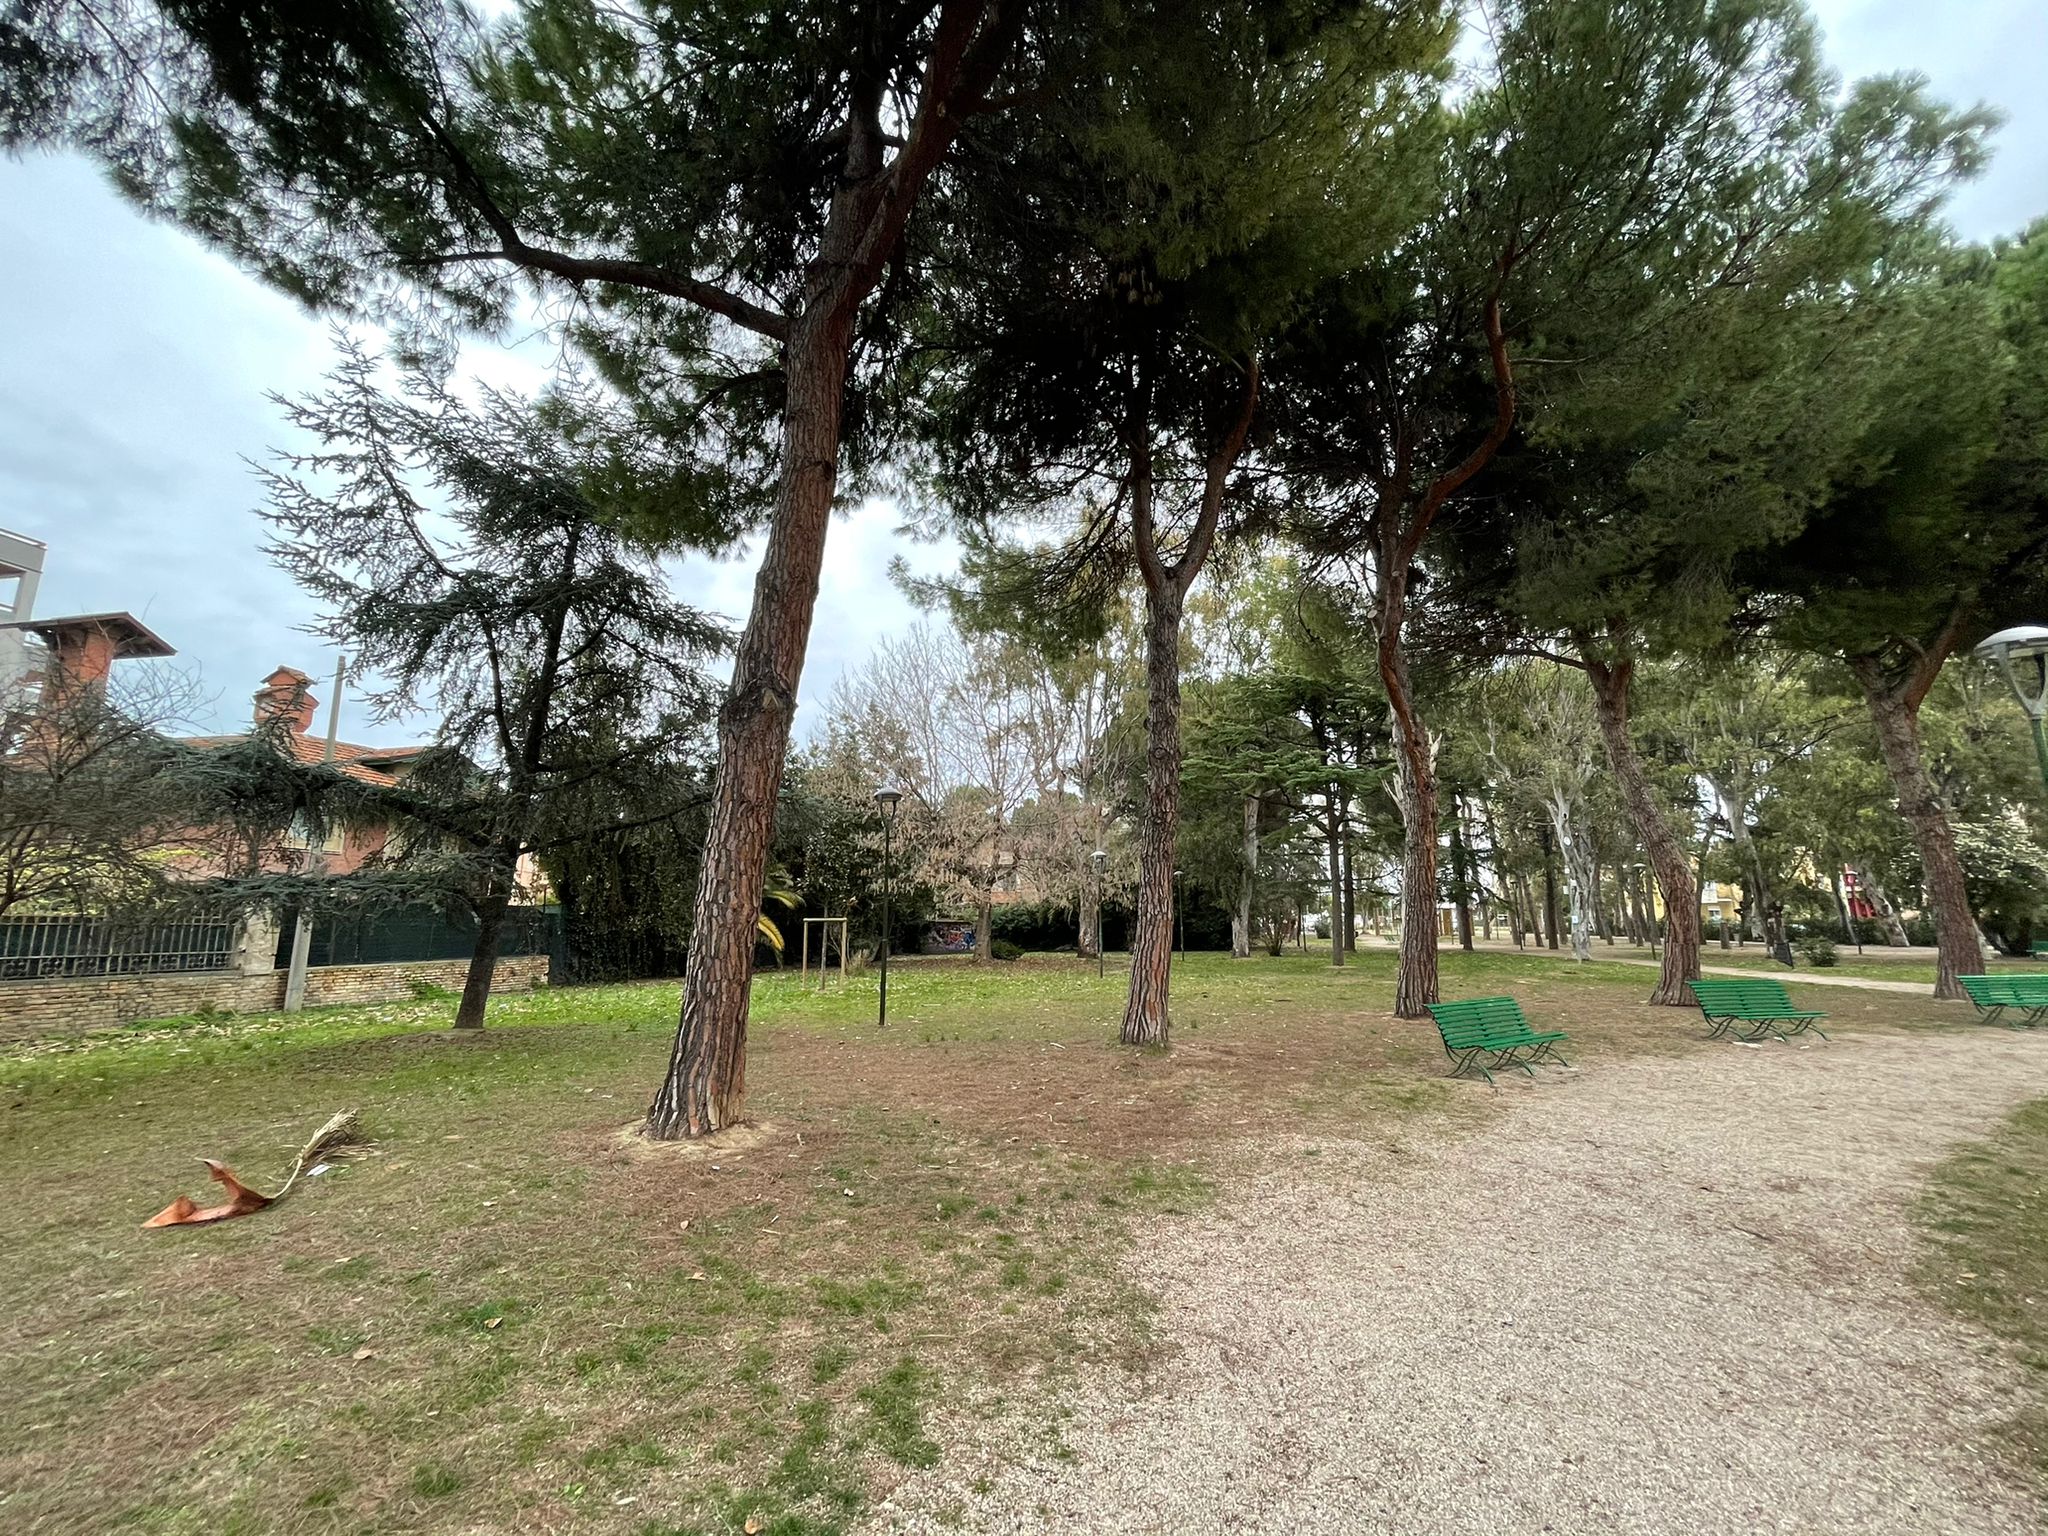 Il Comune di Giulianova aderisce al progetto “Sport nei Parchi” con i parchi comunali Franchi e Cerasari